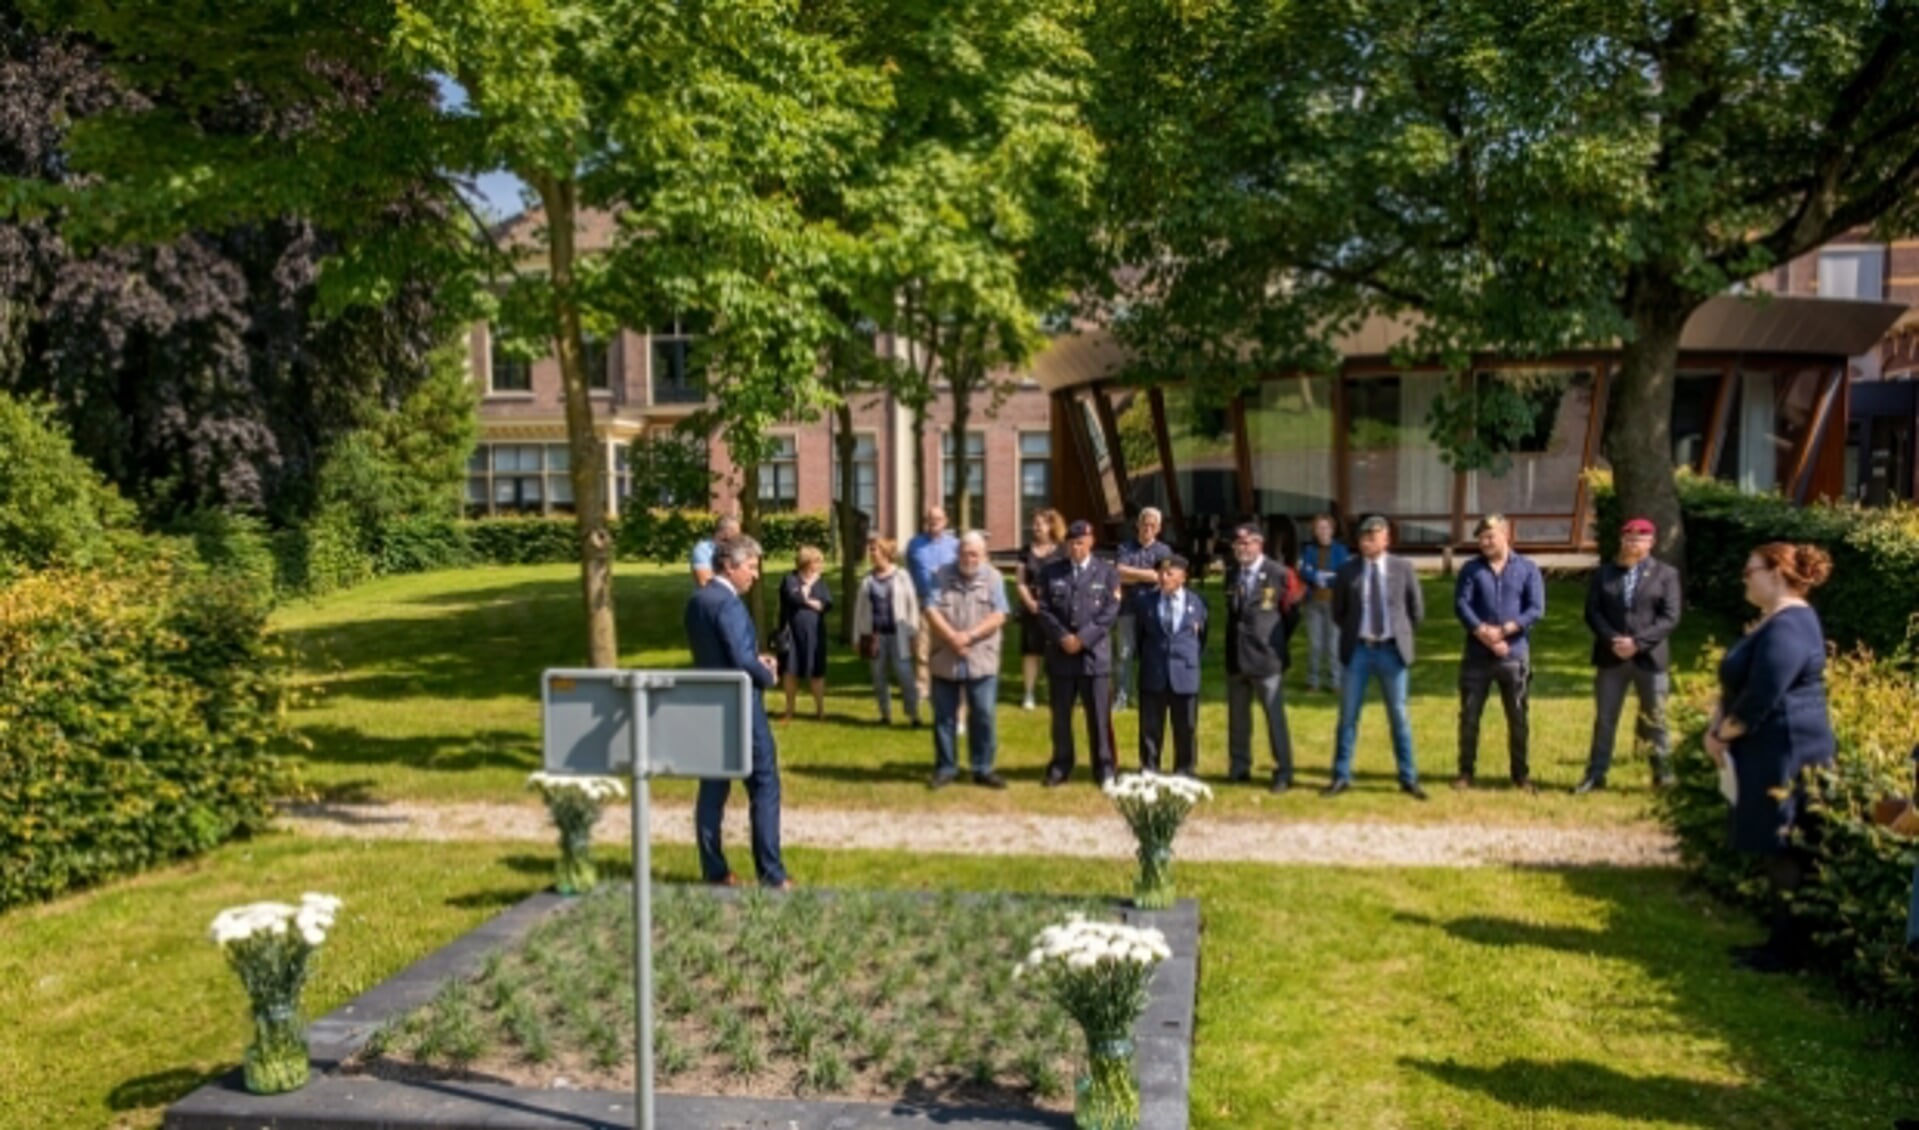 Burgemeester Hans Beenakker en oudste veteraan M. van Gelder onthulde met het hijsen van een nieuwe vlag het witte anjerperk in stadstuin op Nationale Veteranendag 2021 Foto Jan Bouwhuis.